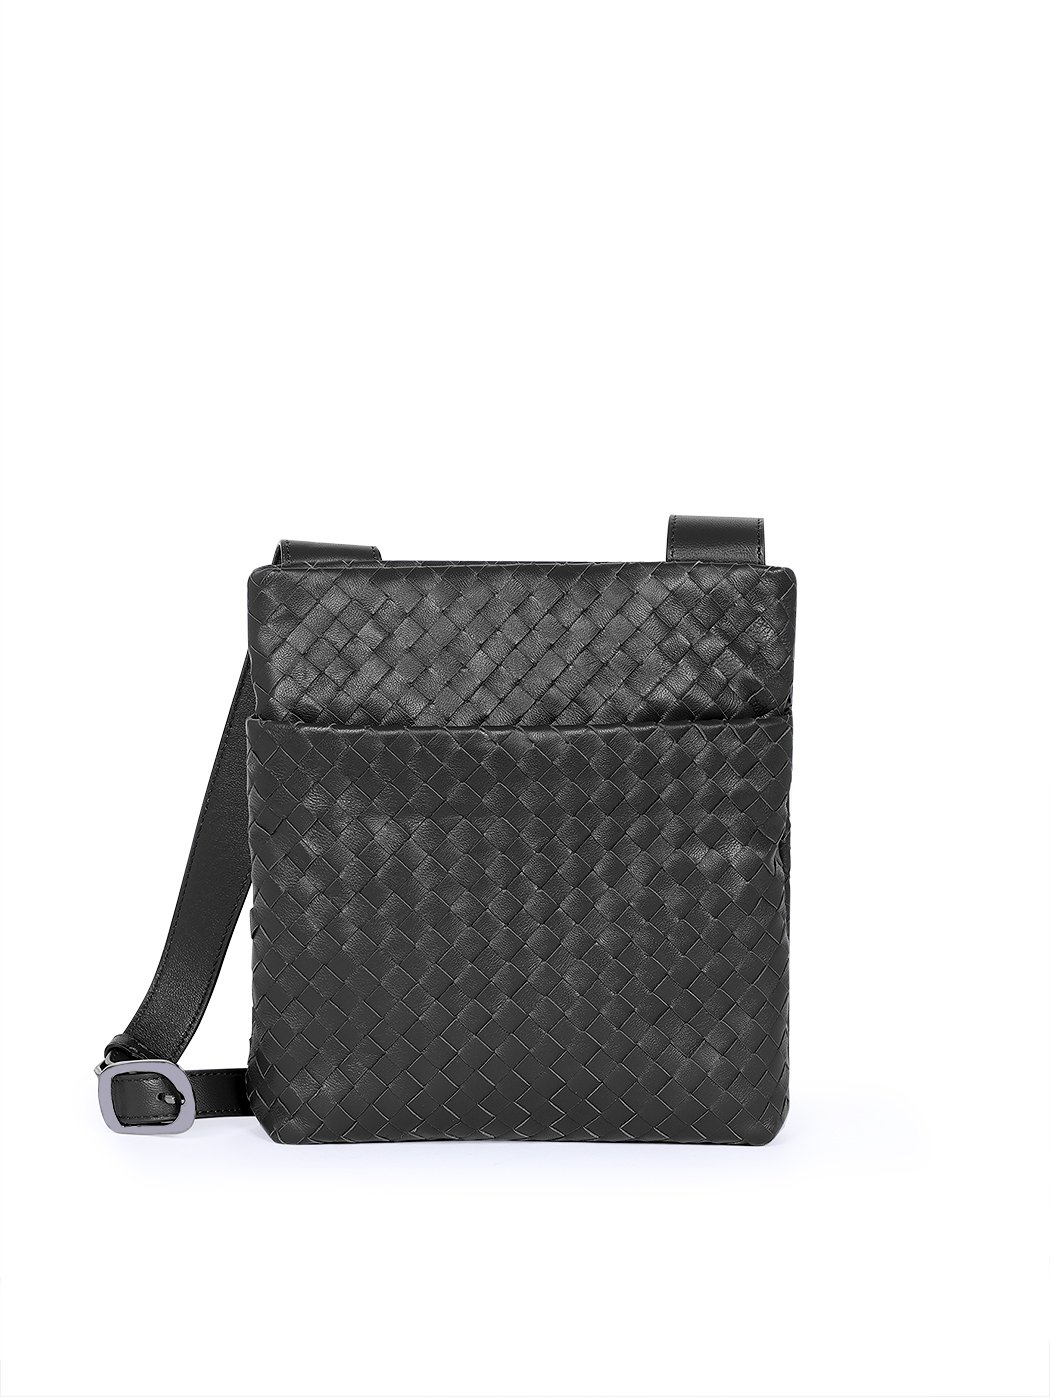 Плетеная мужская сумка кросс – боди  коллекции  Intrecci черного цвета